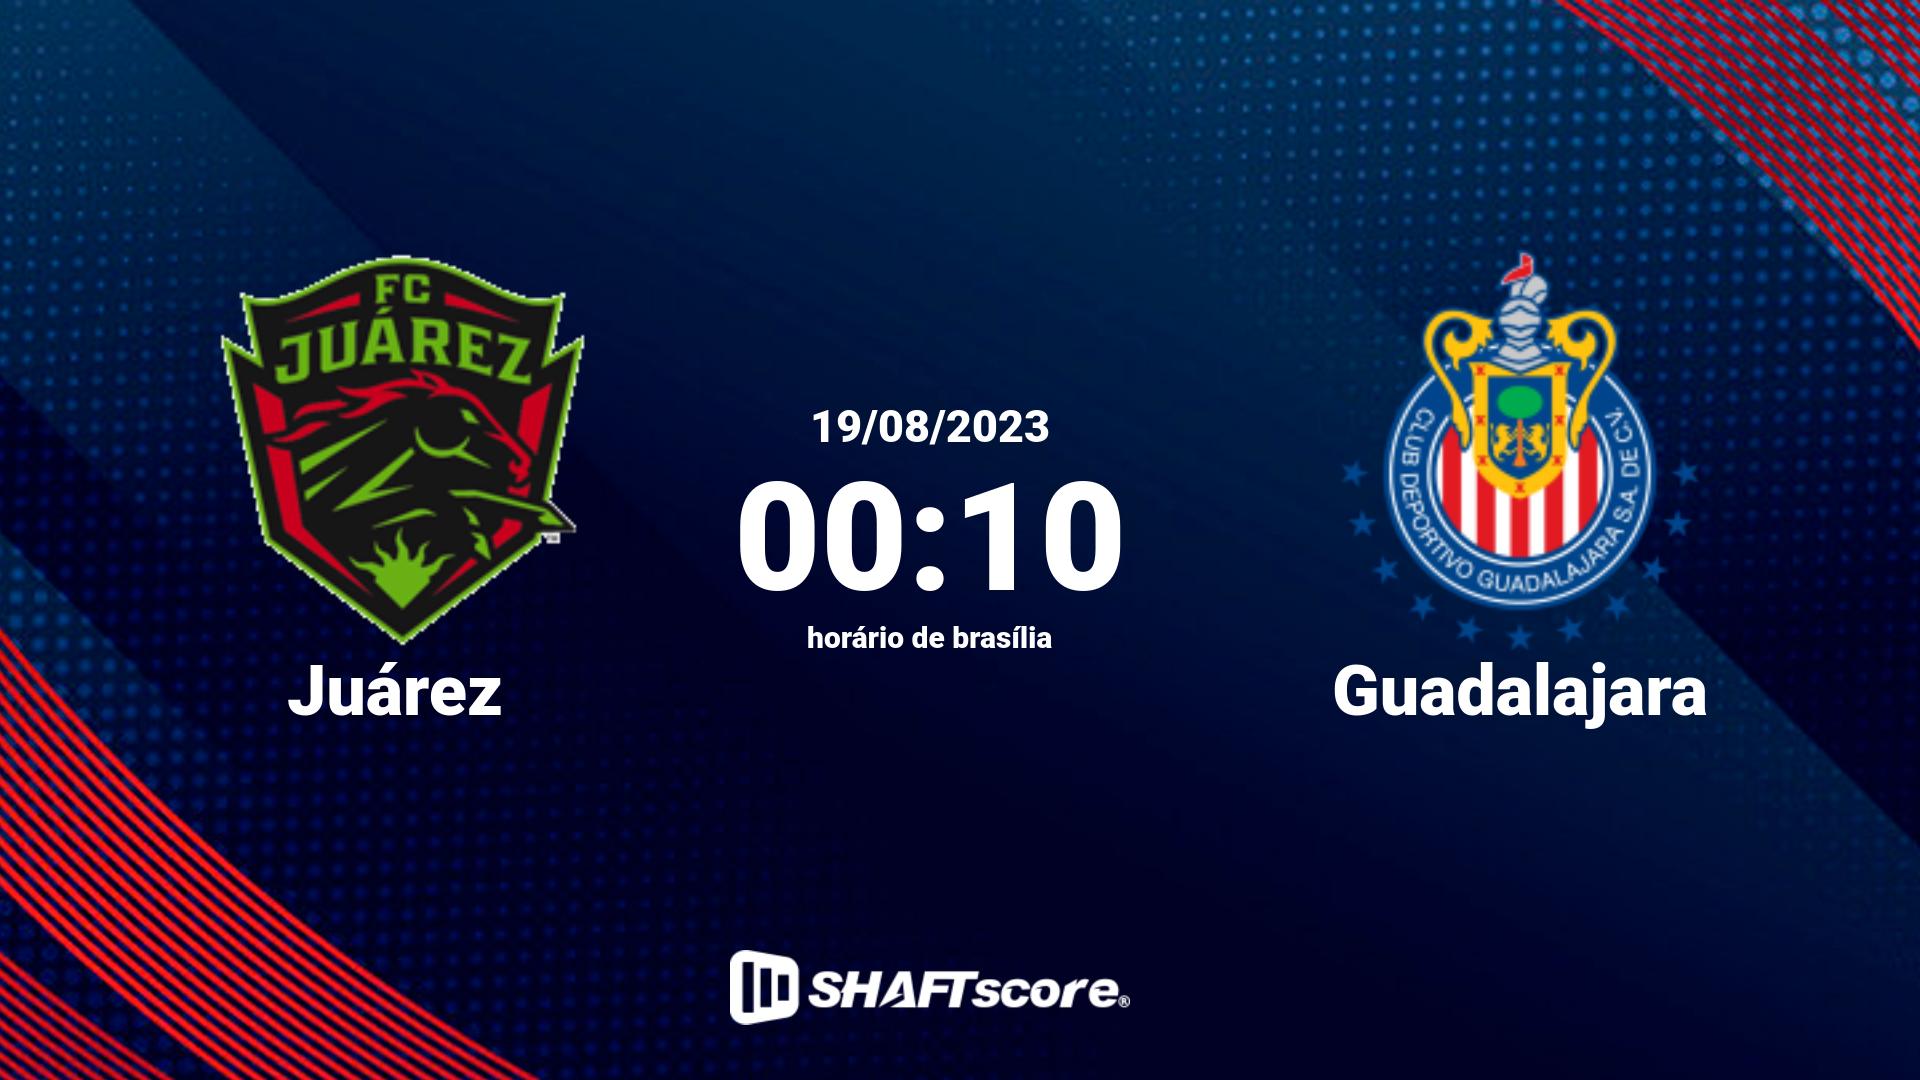 Estatísticas do jogo Juárez vs Guadalajara 19.08 00:10